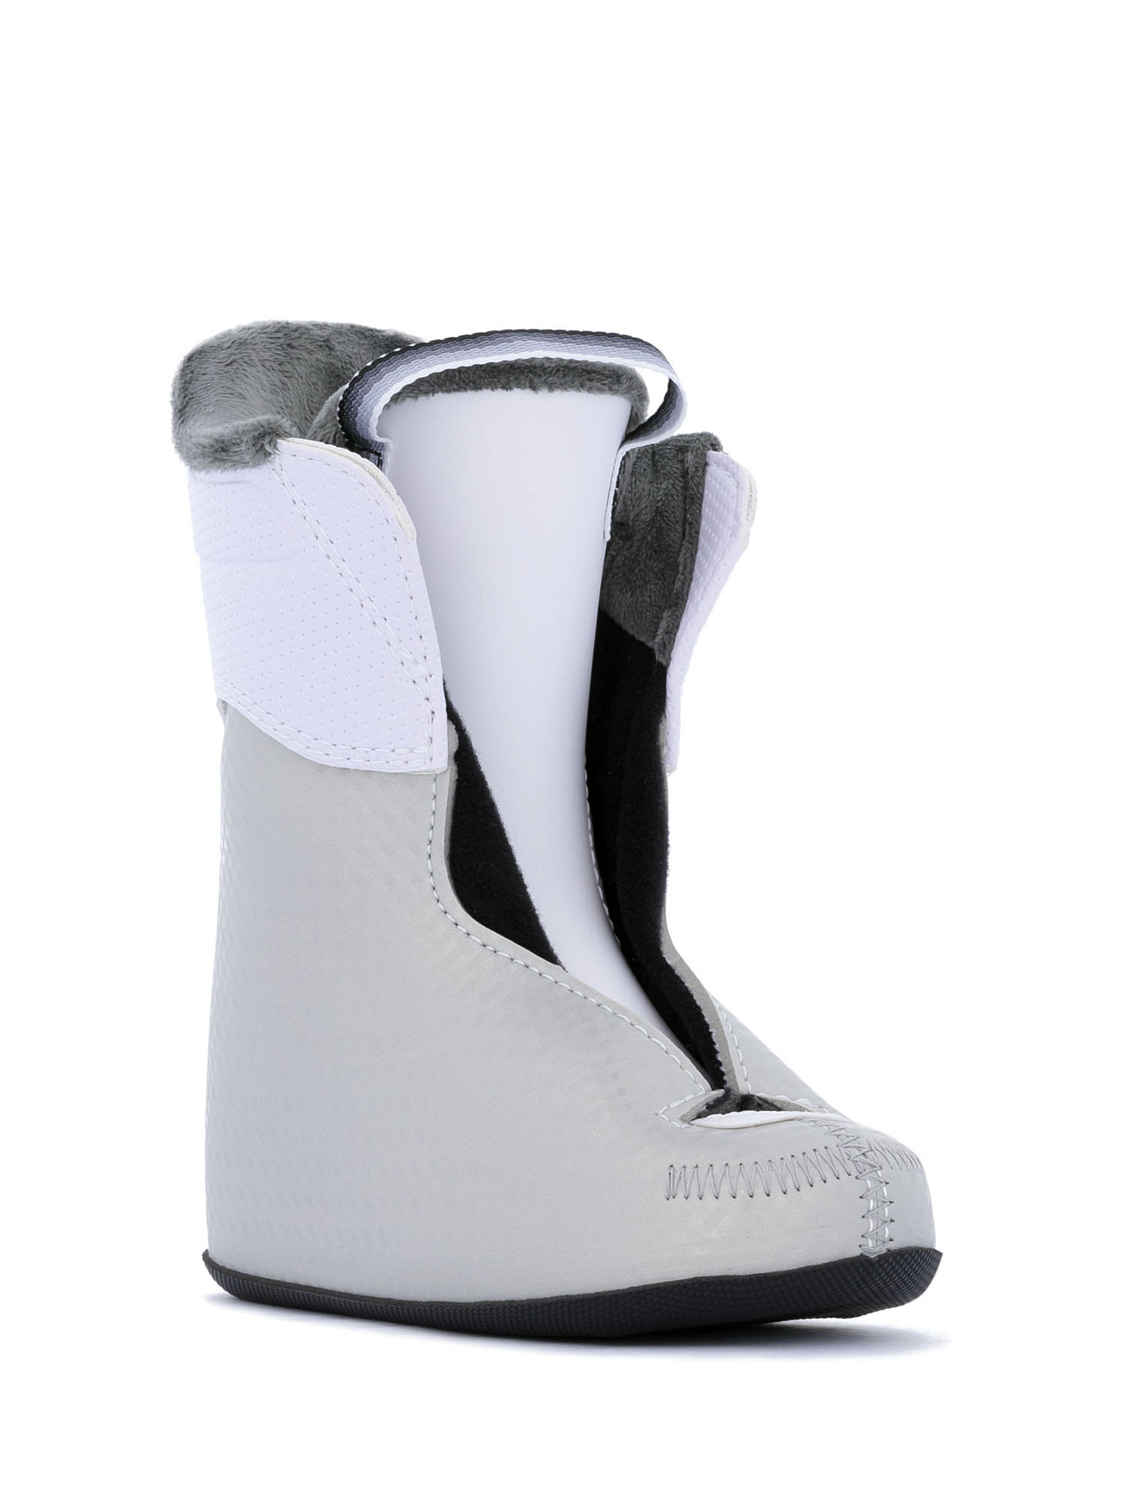 Горнолыжные ботинки детские HEAD J 1 White/Gray